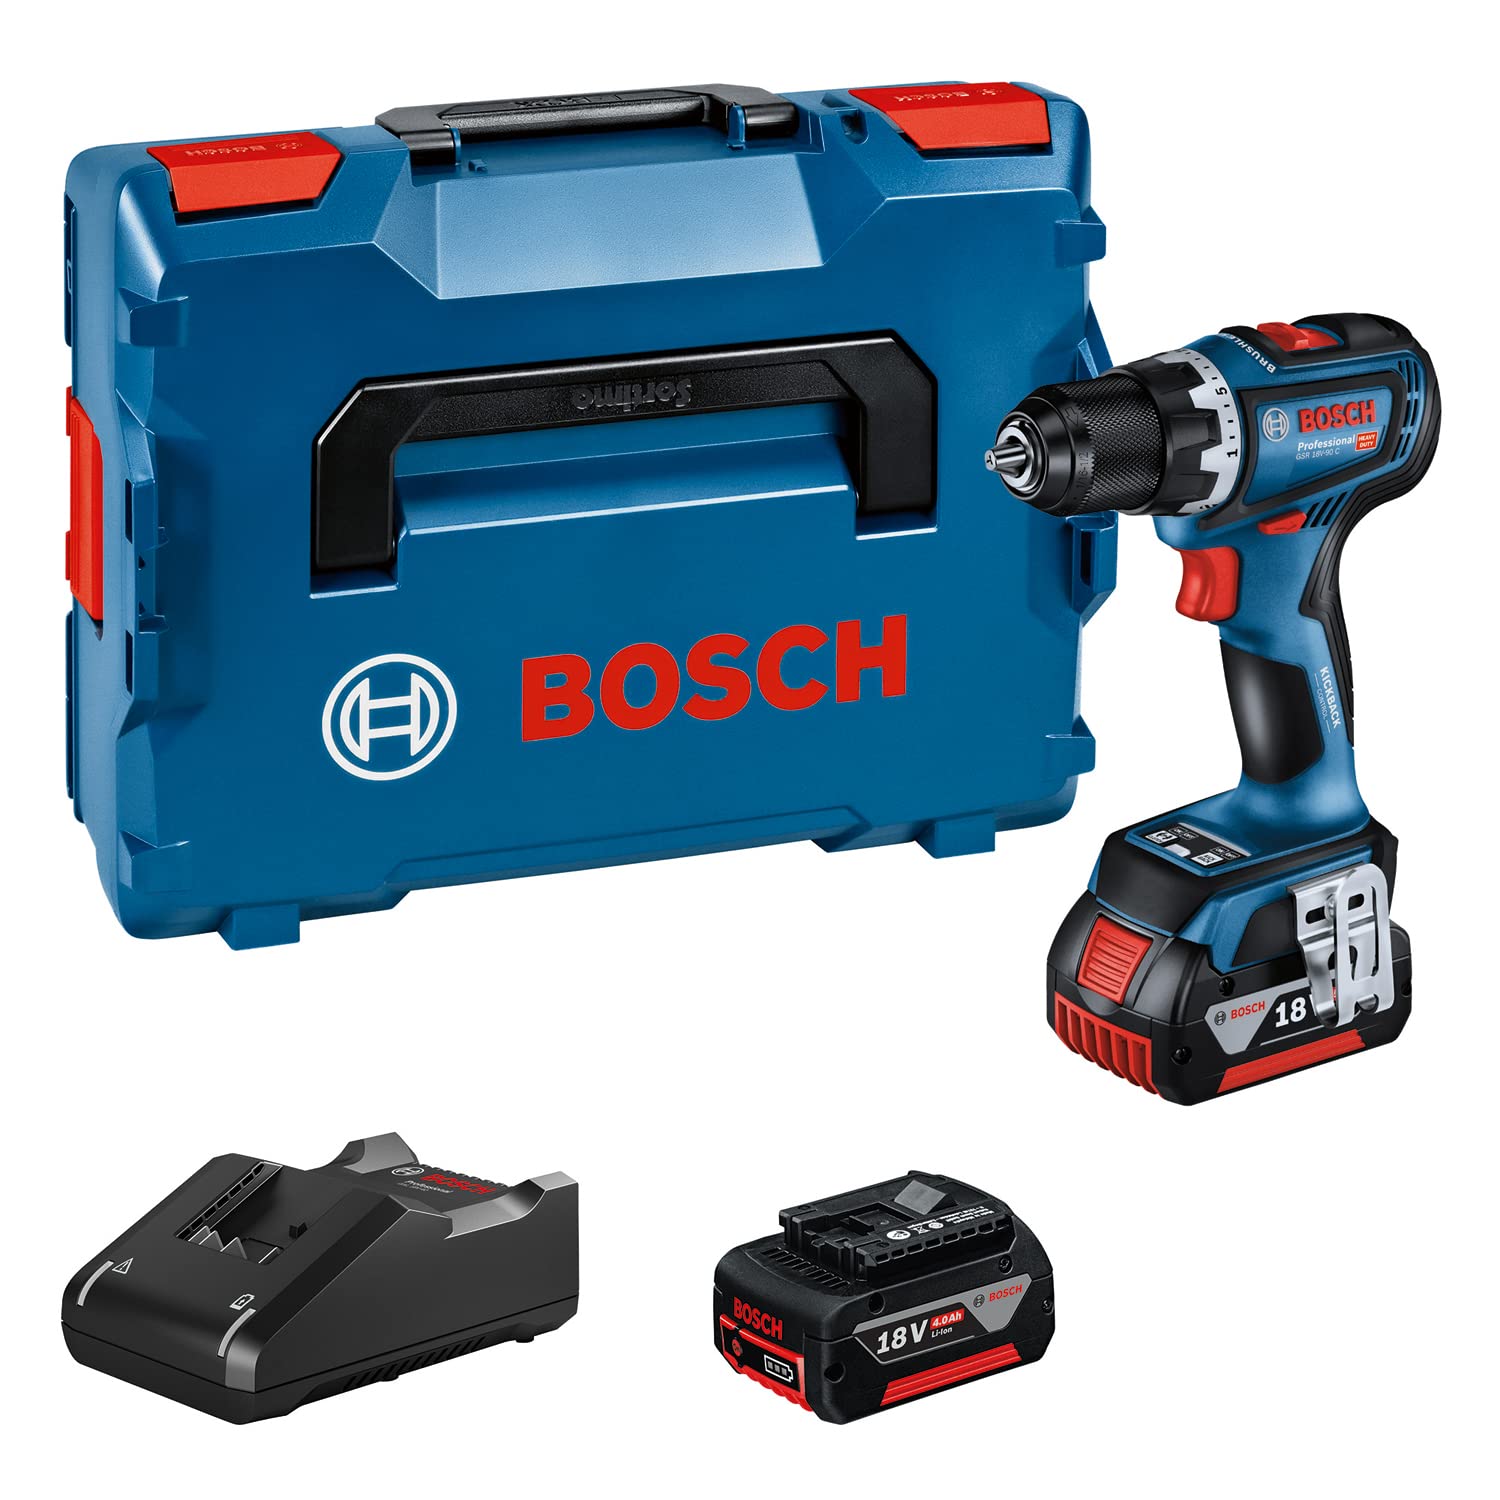 Bosch Professional 18V System Akku-Bohrschrauber GSR 18V-90 C (inkl. 2 x Akkus 5, 0 Ah, Ladegerät GAL 18V-40, in L-BOXX), 06019K6006, Blue